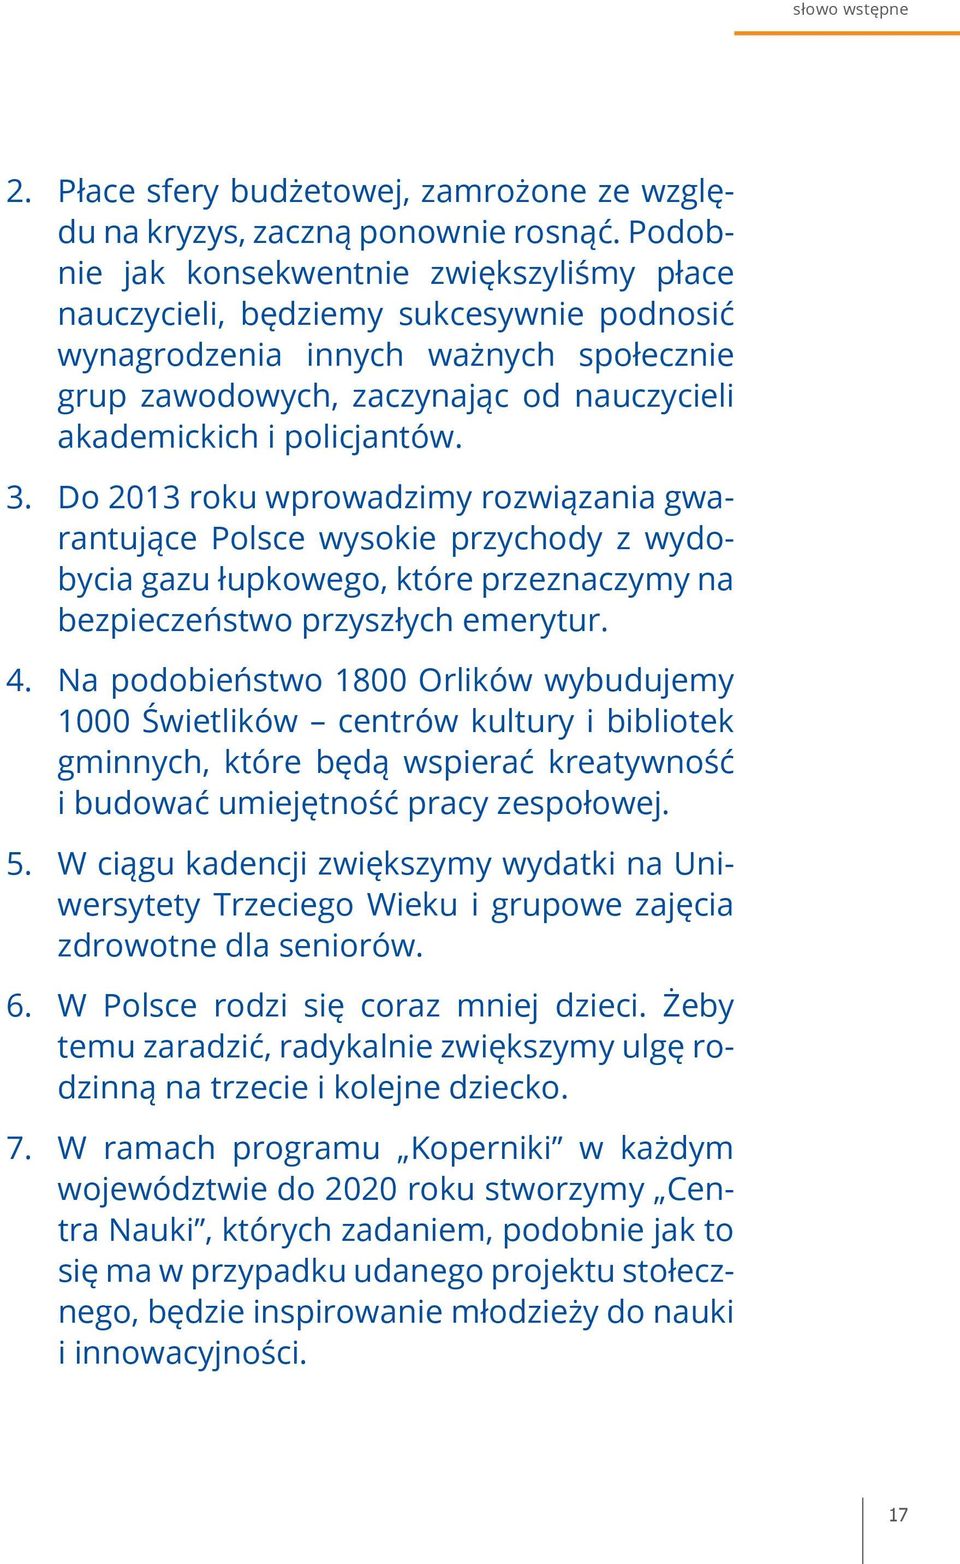 Do 2013 roku wprowadzimy rozwiązania gwarantujące Polsce wysokie przychody z wydobycia gazu łupkowego, które przeznaczymy na bezpieczeństwo przyszłych emerytur.